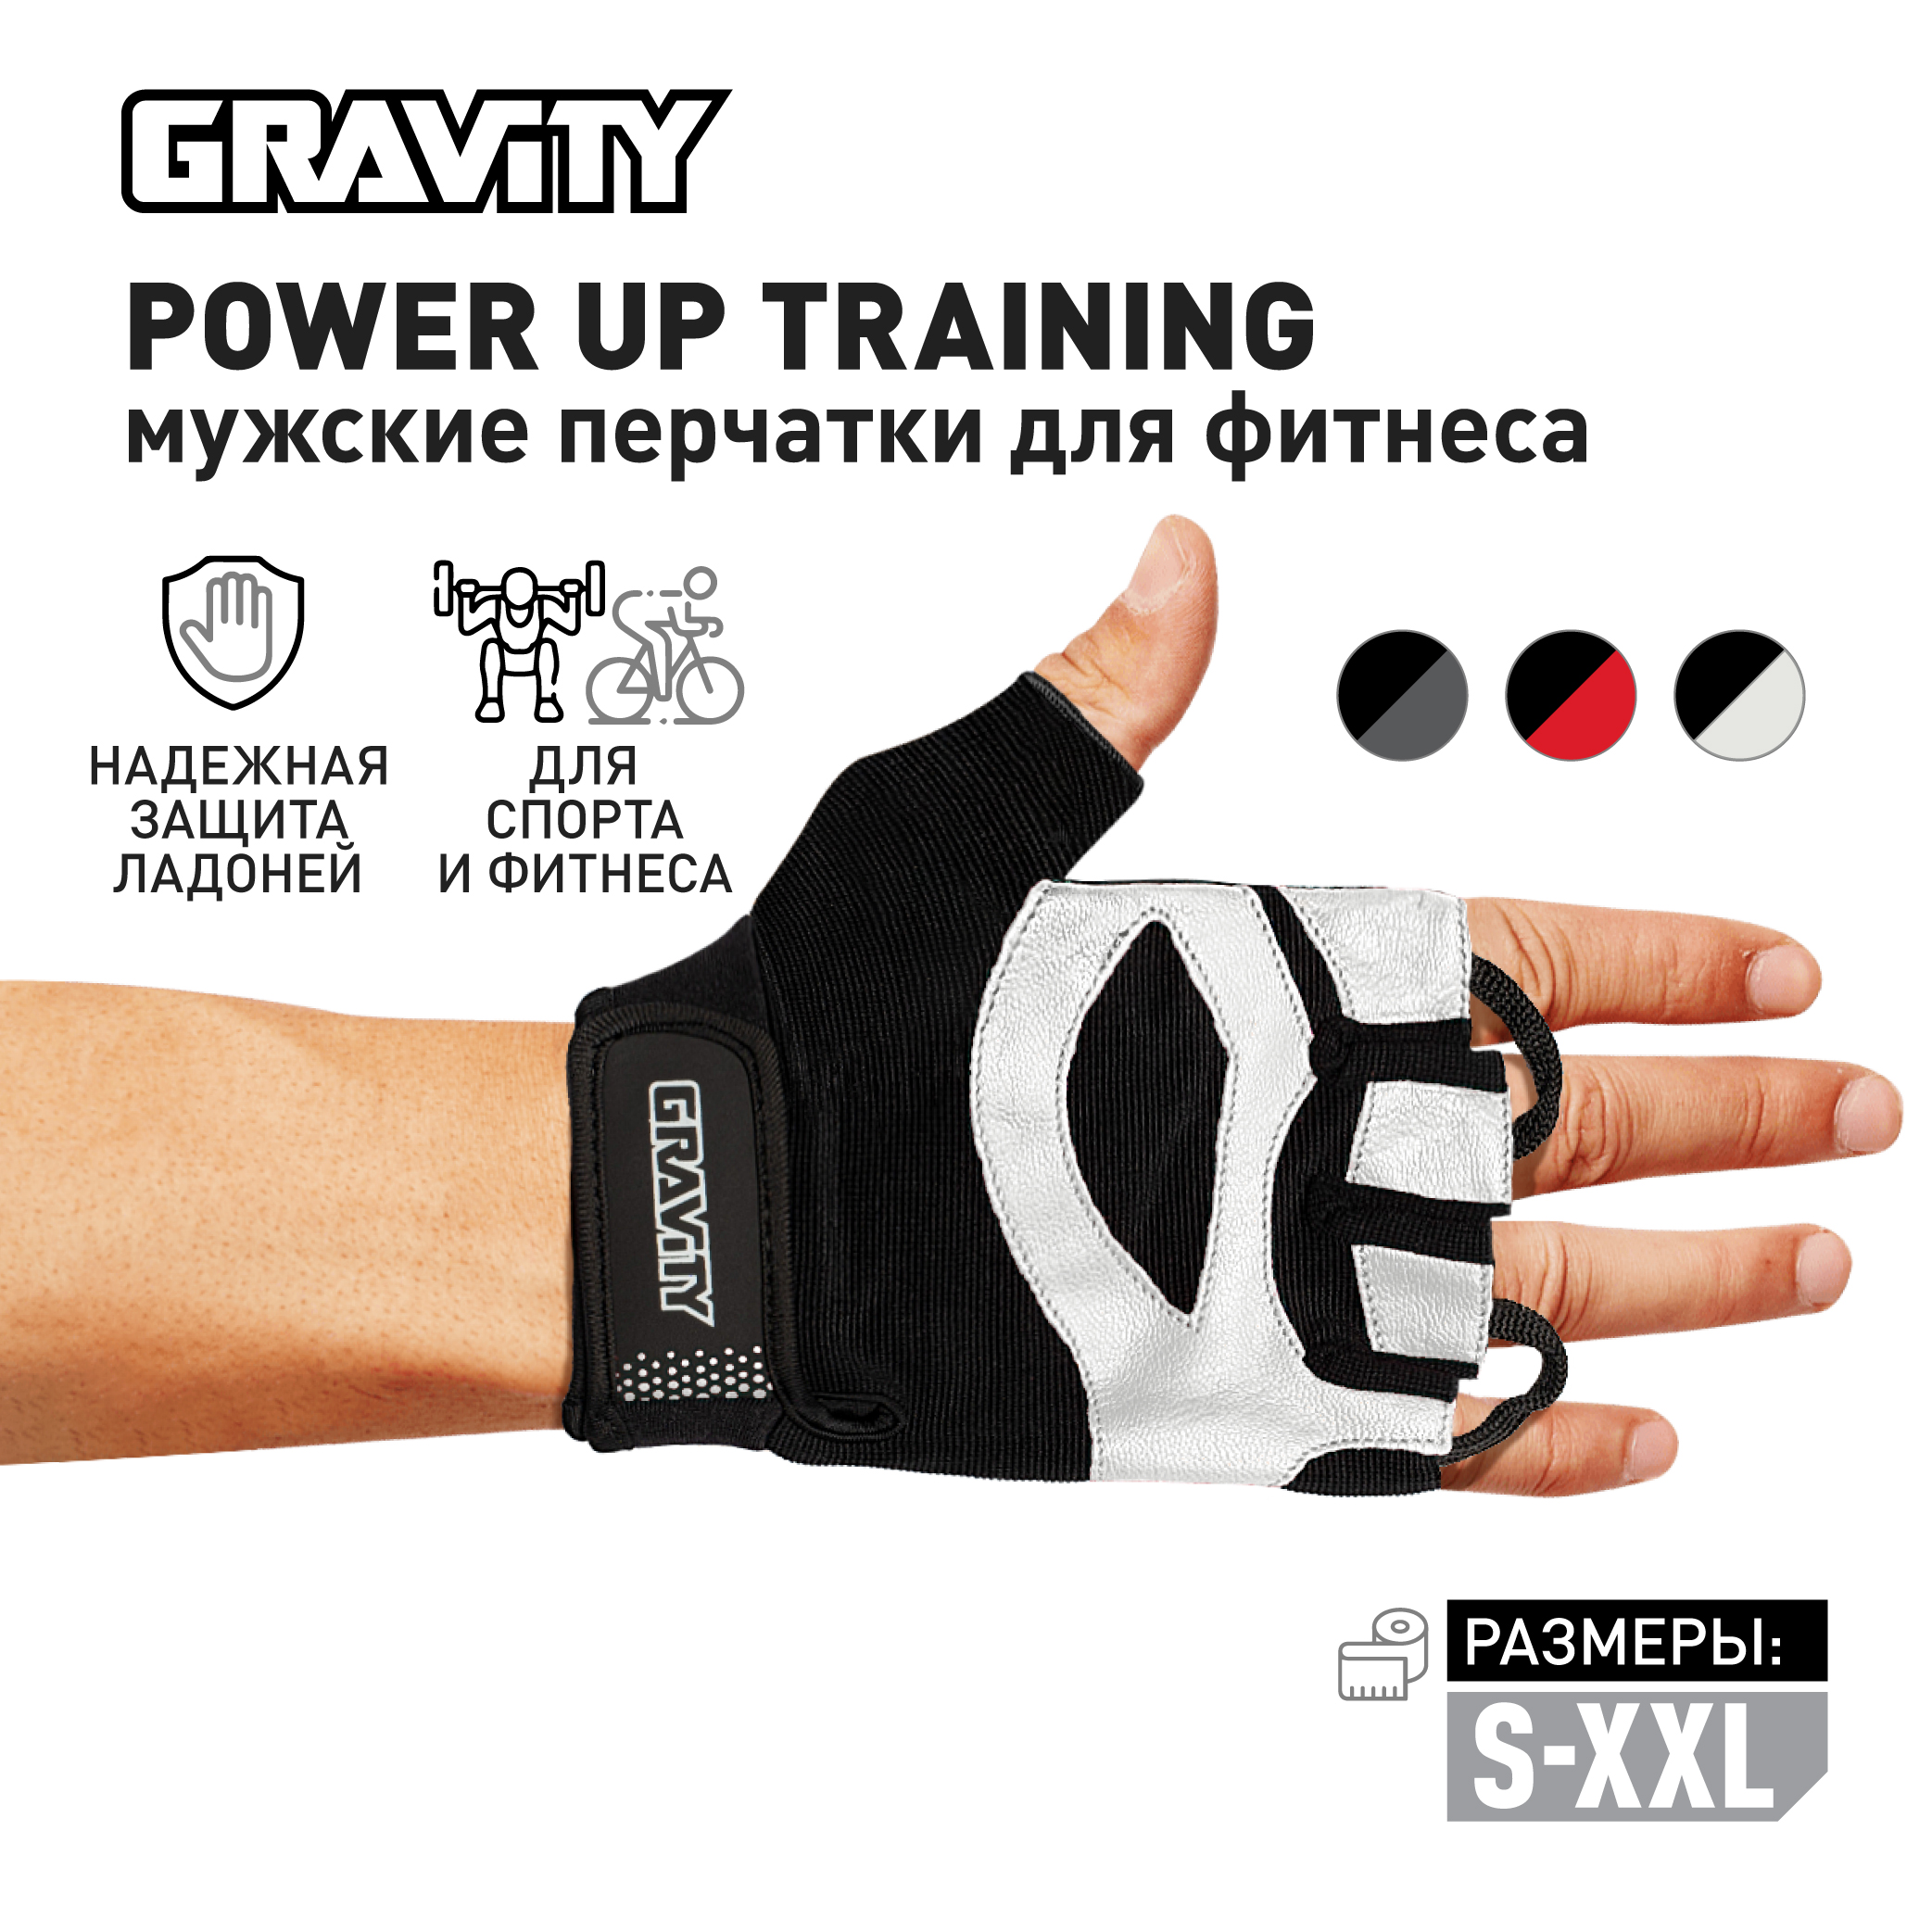 Мужские перчатки для фитнеса Gravity Power Up Training, черно-белые, размер XL